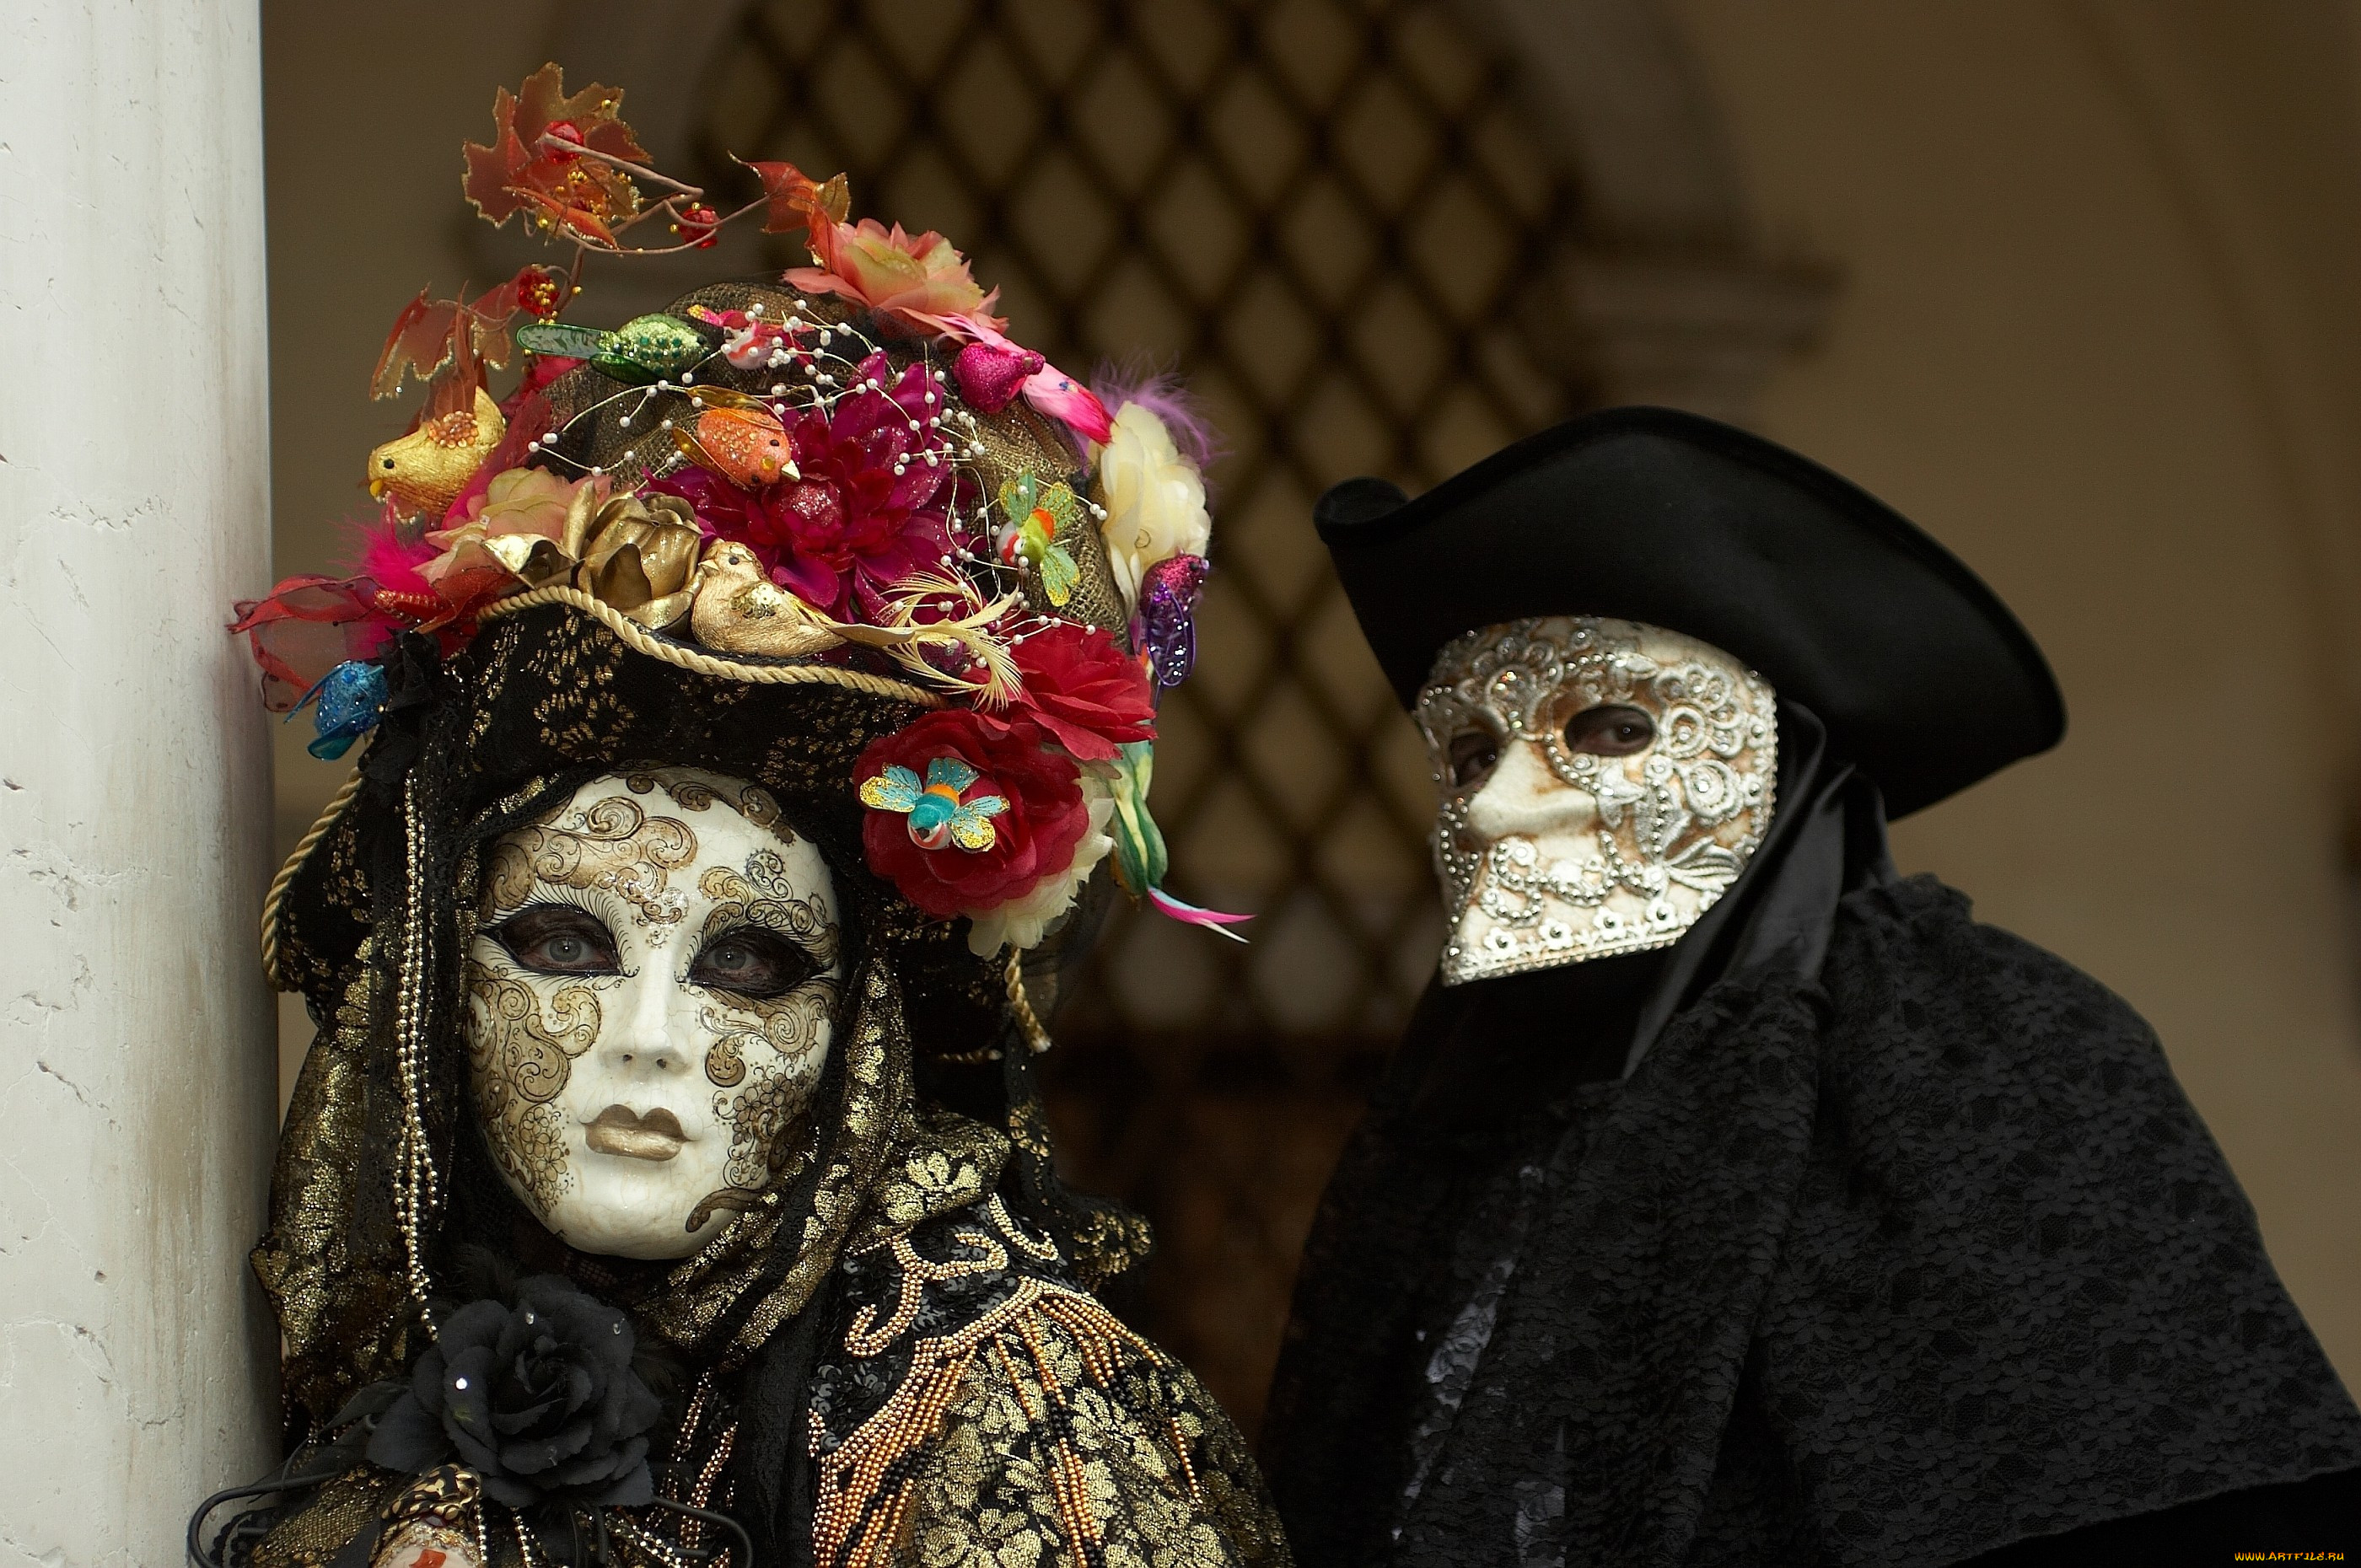 Venecia maskarad маски